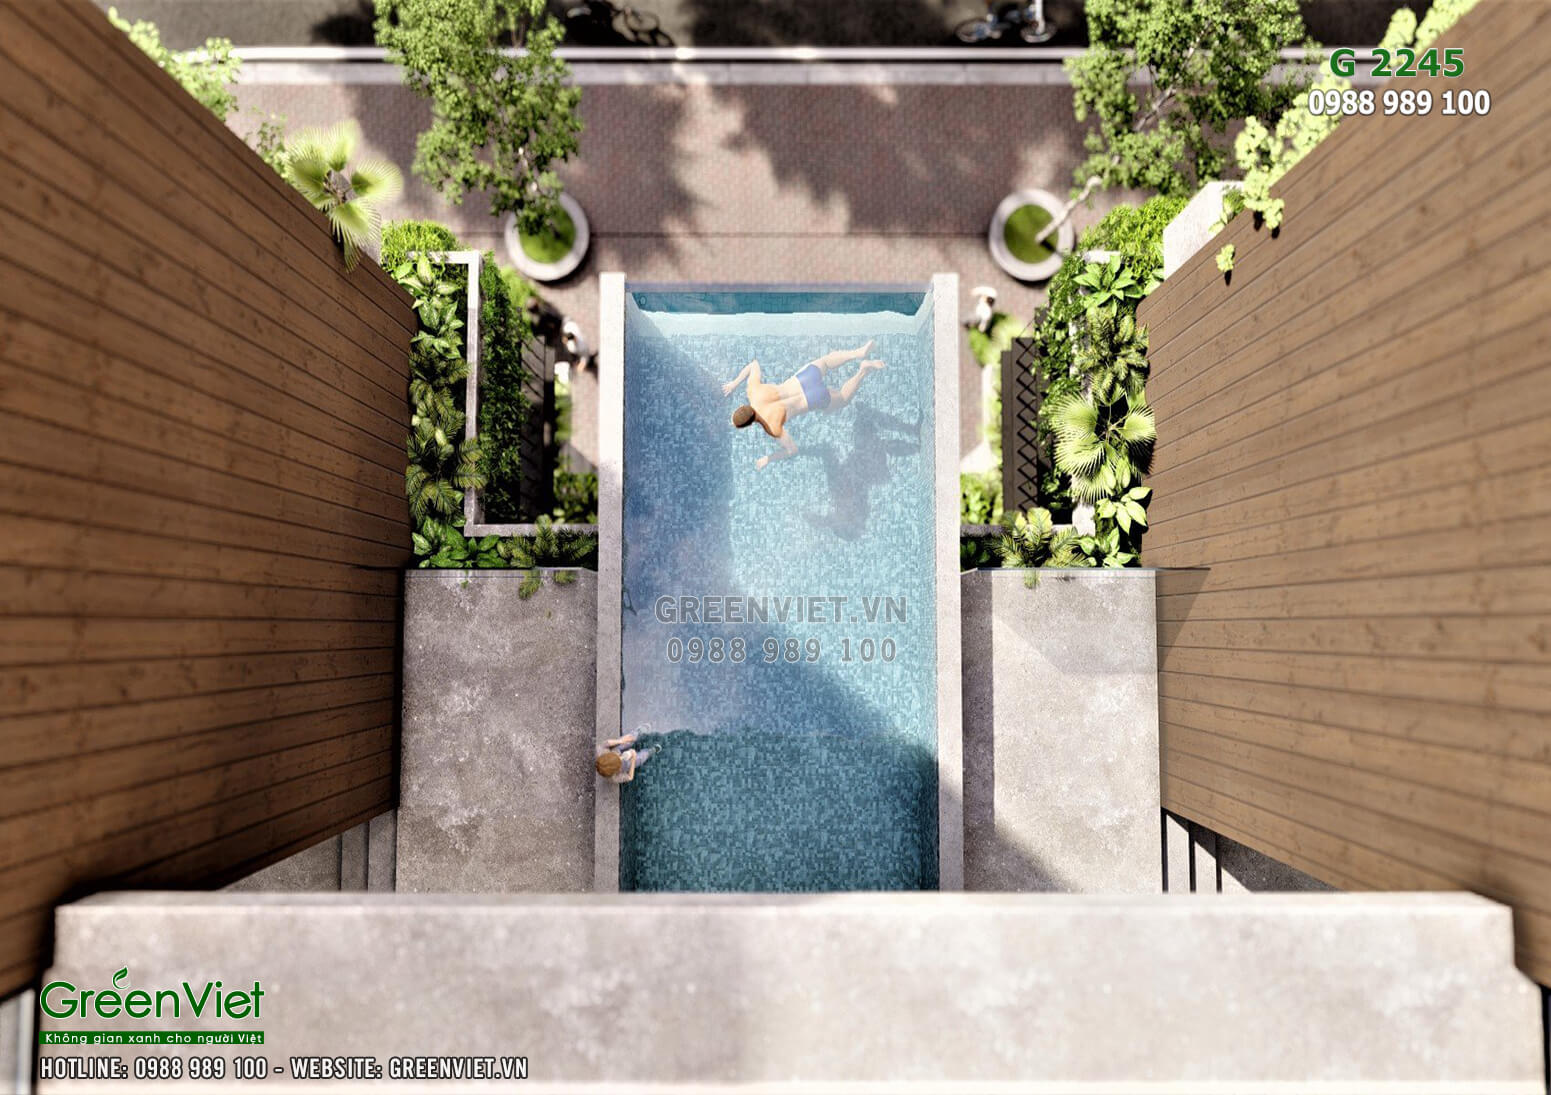 Hình ảnh: Biệt thự có bể bơi mang lại không gian đẹp và mát mẻ